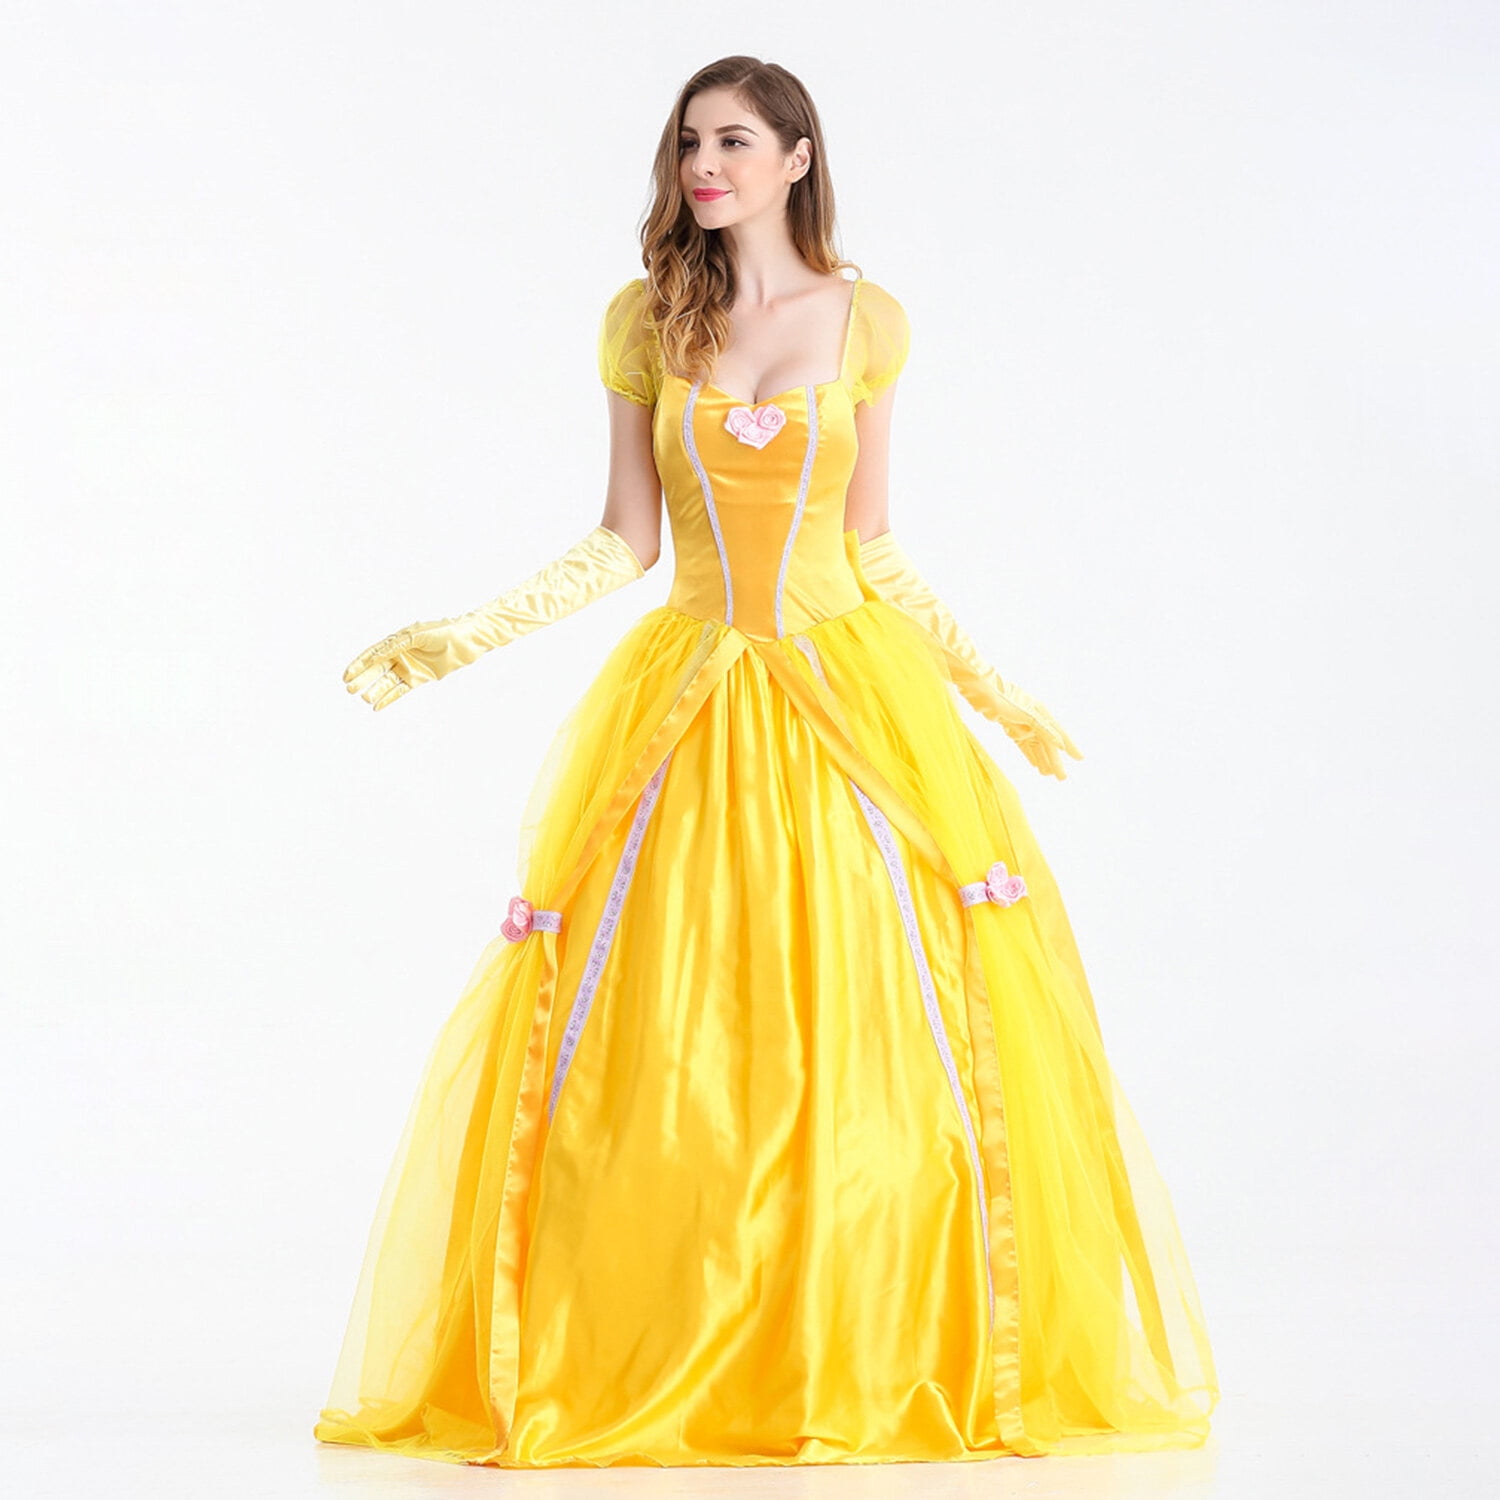 Princess Beauty Costume for Women , Girl Princess Belle Dress up Ball ...